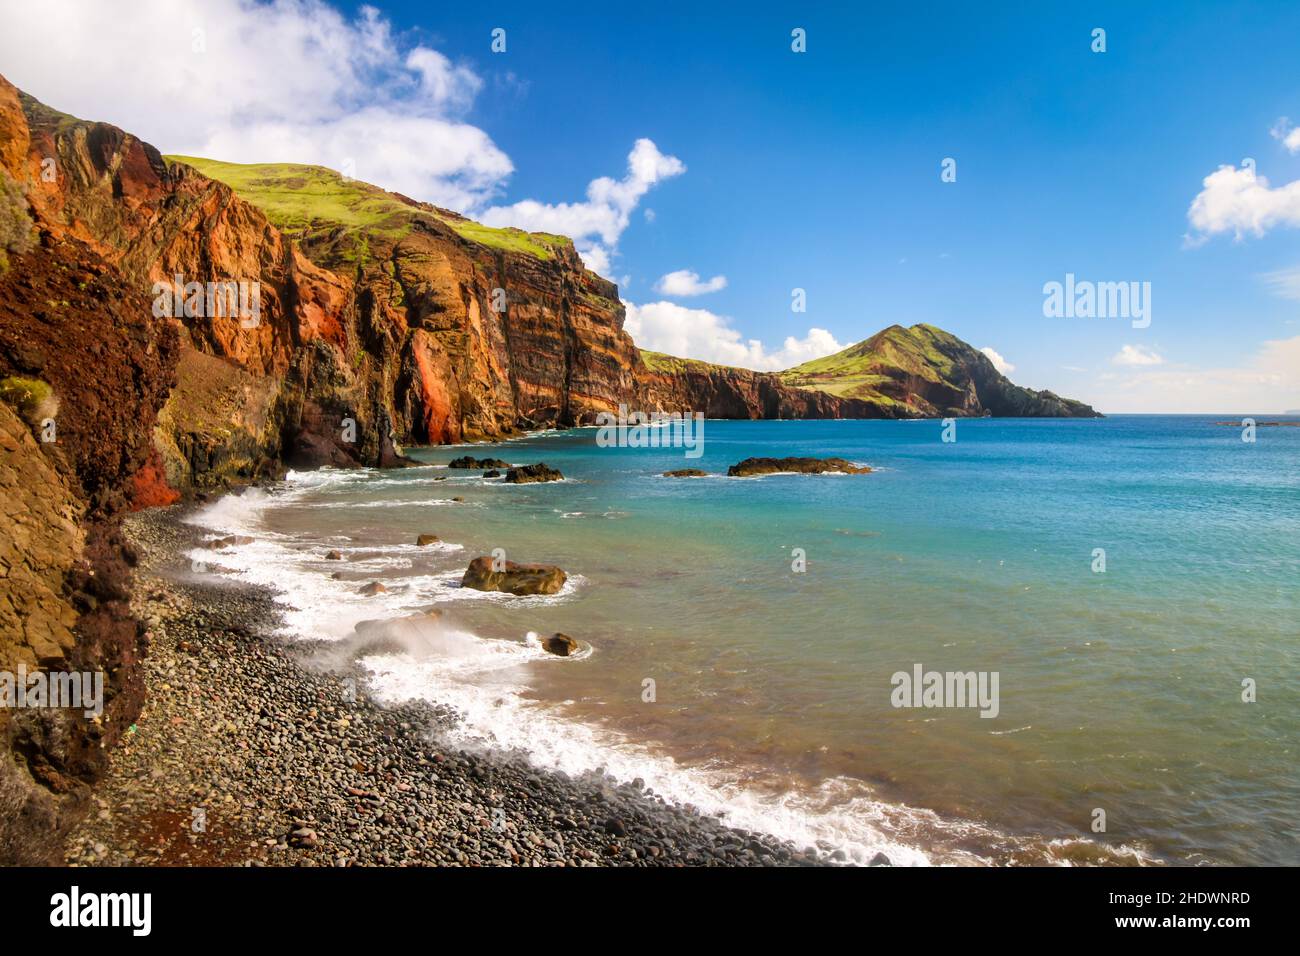 Magnifique paysage de collines au bord de la côte de l'océan Atlantique dans la ville de Funchal, Portugal Banque D'Images